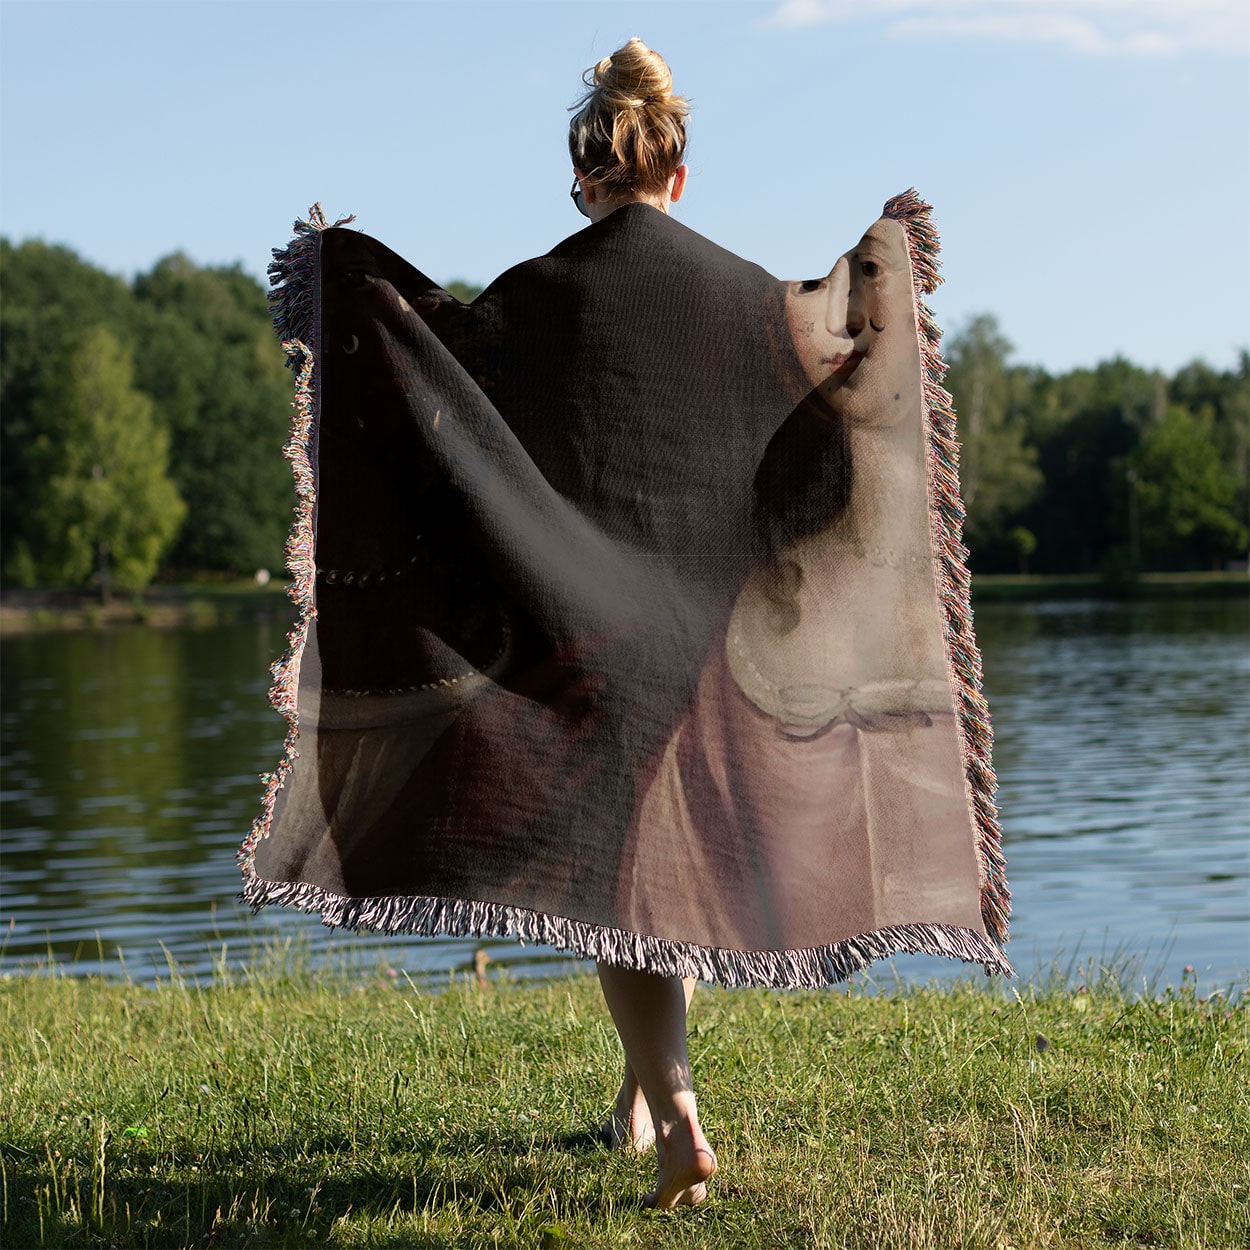 Renaissance Woven Blanket Held on a Woman's Back Outside